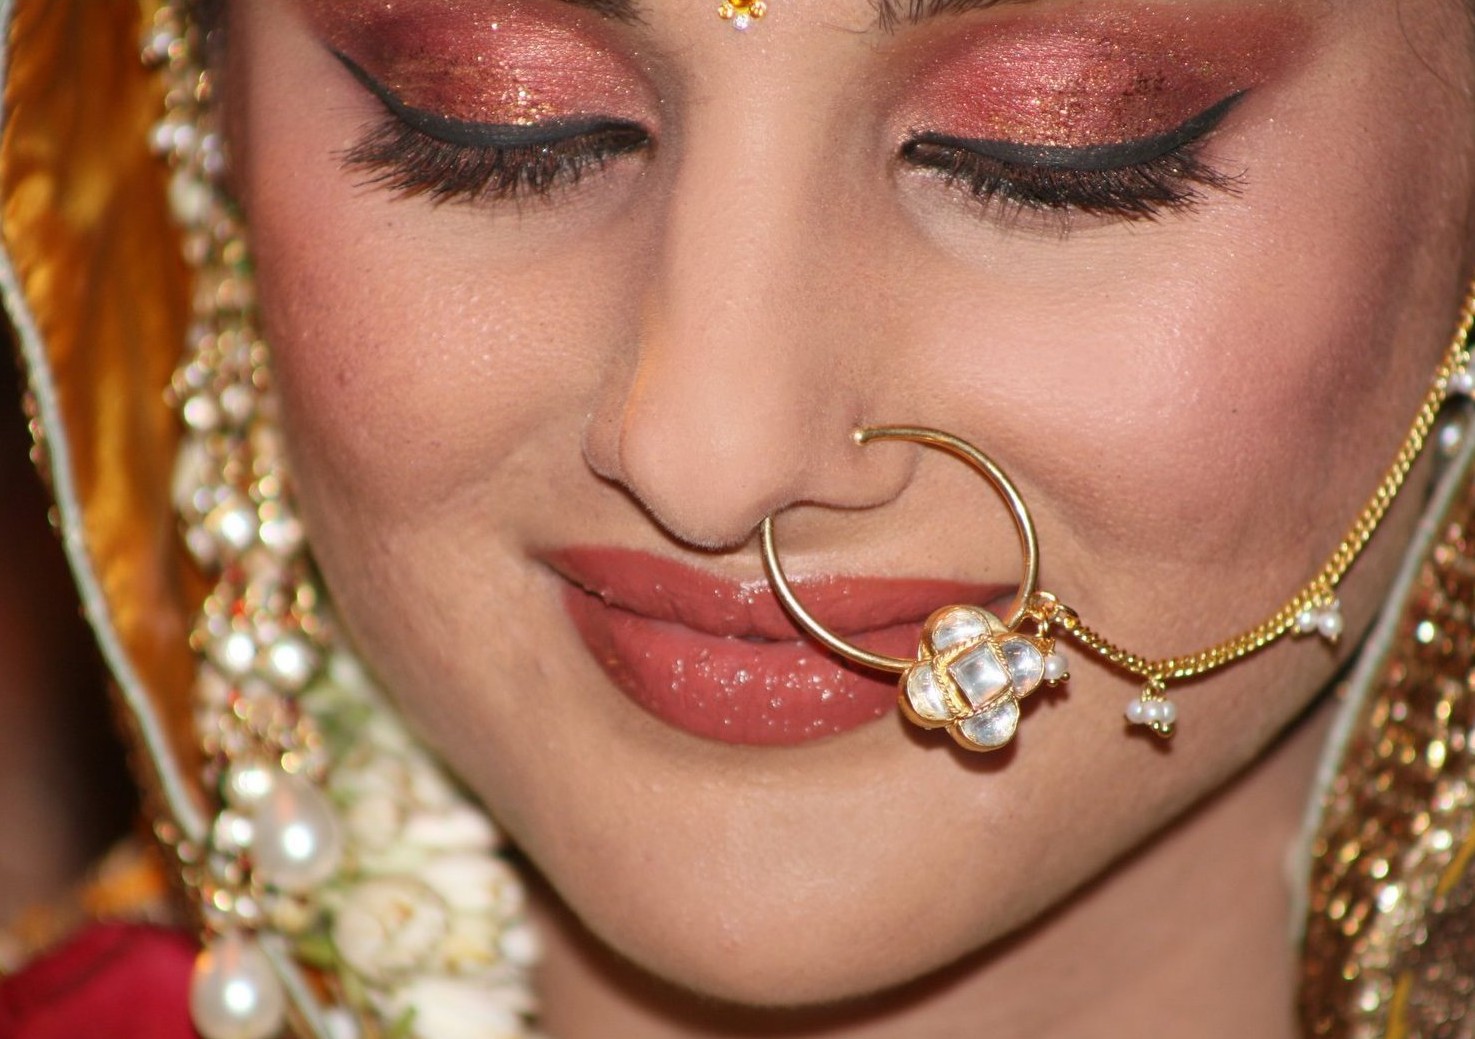 Piercings In India